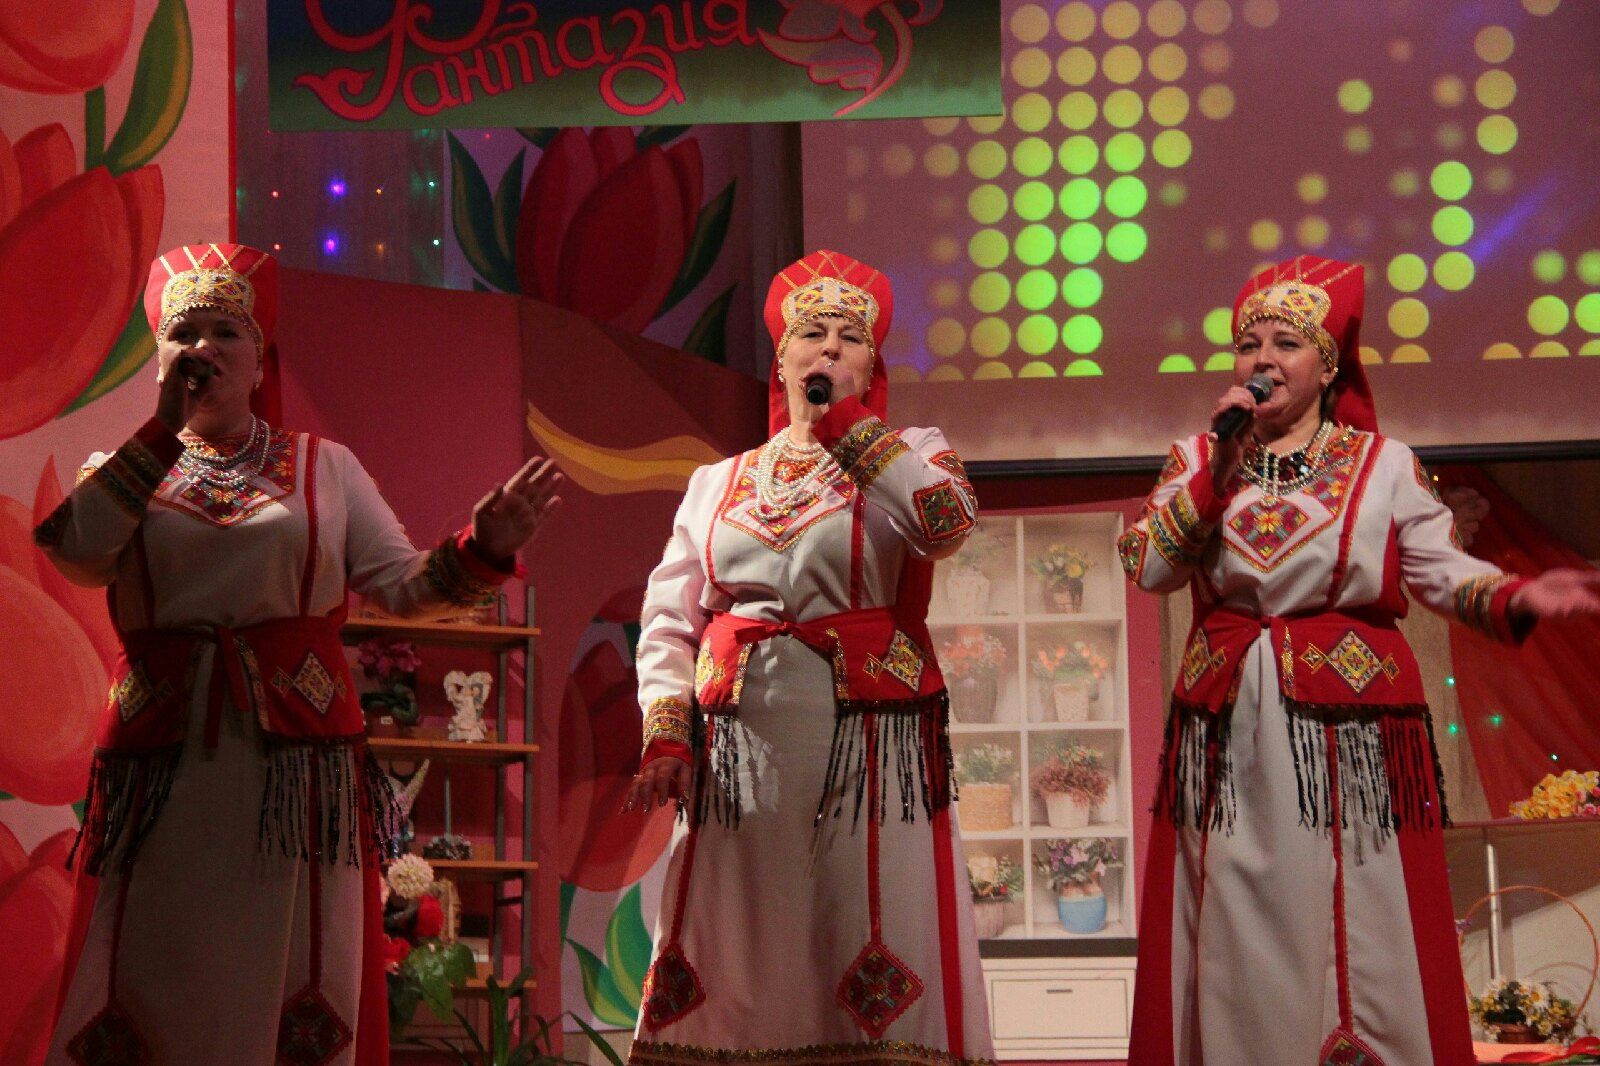 Тәтештә район мәдәният йортында Халыкара хатын-кызлар көненә багышланган "Яз, мәхәббәт, фантазия" дигән бәйрәм программасы булып узды